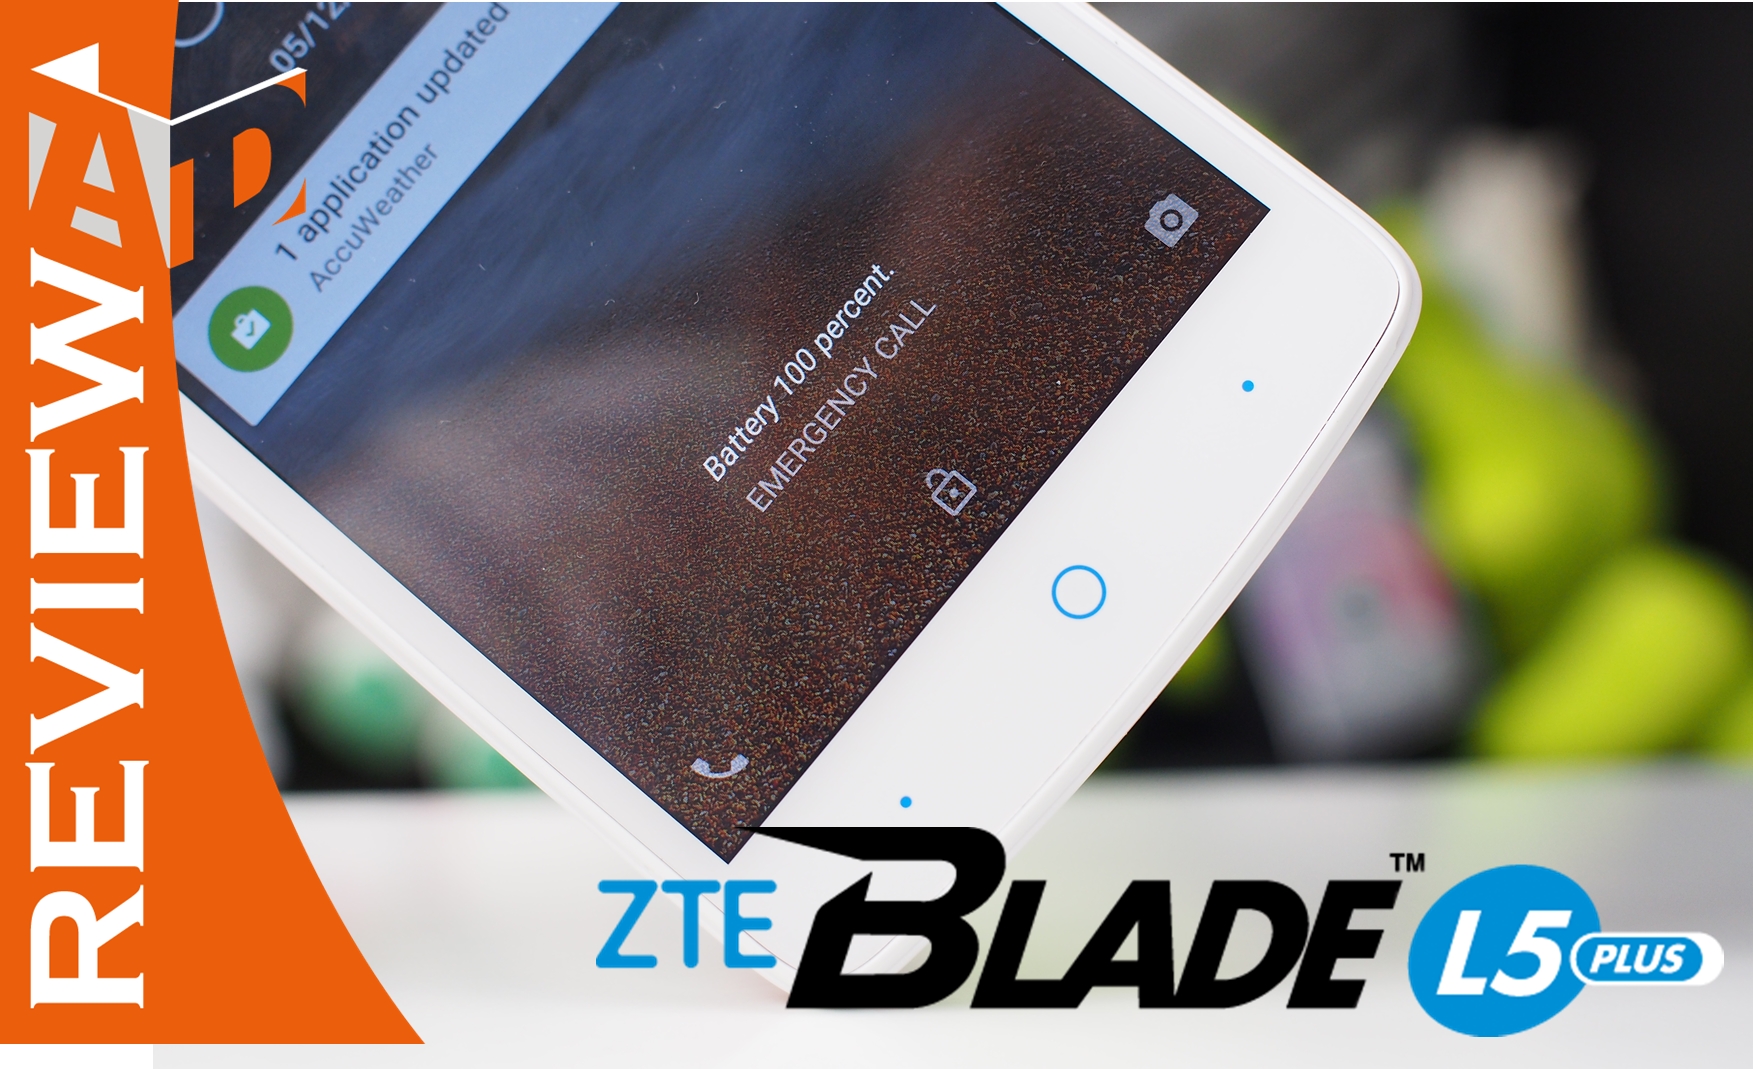 พำ | Blade L5 plus | รีวิว ZTE Blade L5 plus แอนดรอยด์ราคาเบาๆ รุ่นใหม่ หน้าจอสีสันสดใส การใช้งานพอได้ในราคาต่ำกว่าสามพัน